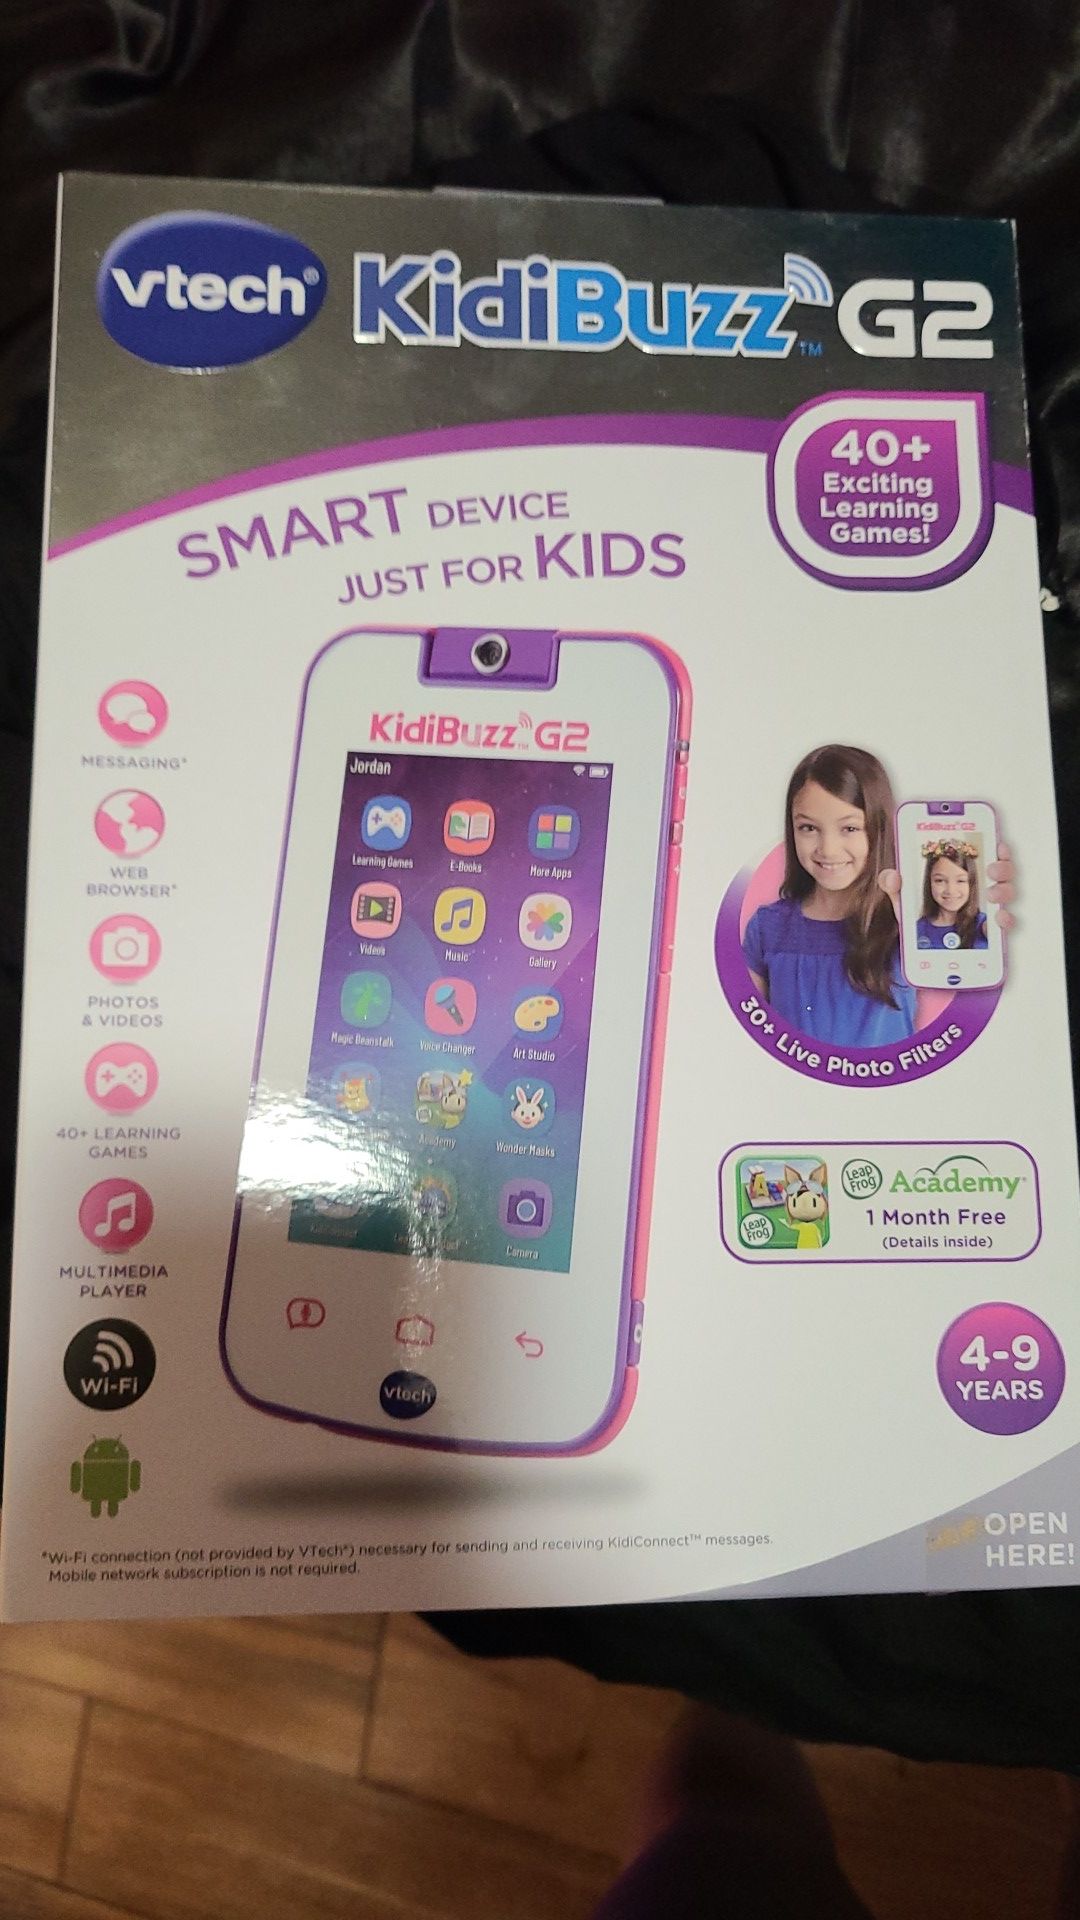 New vtech kids smart device kidibuzzG2